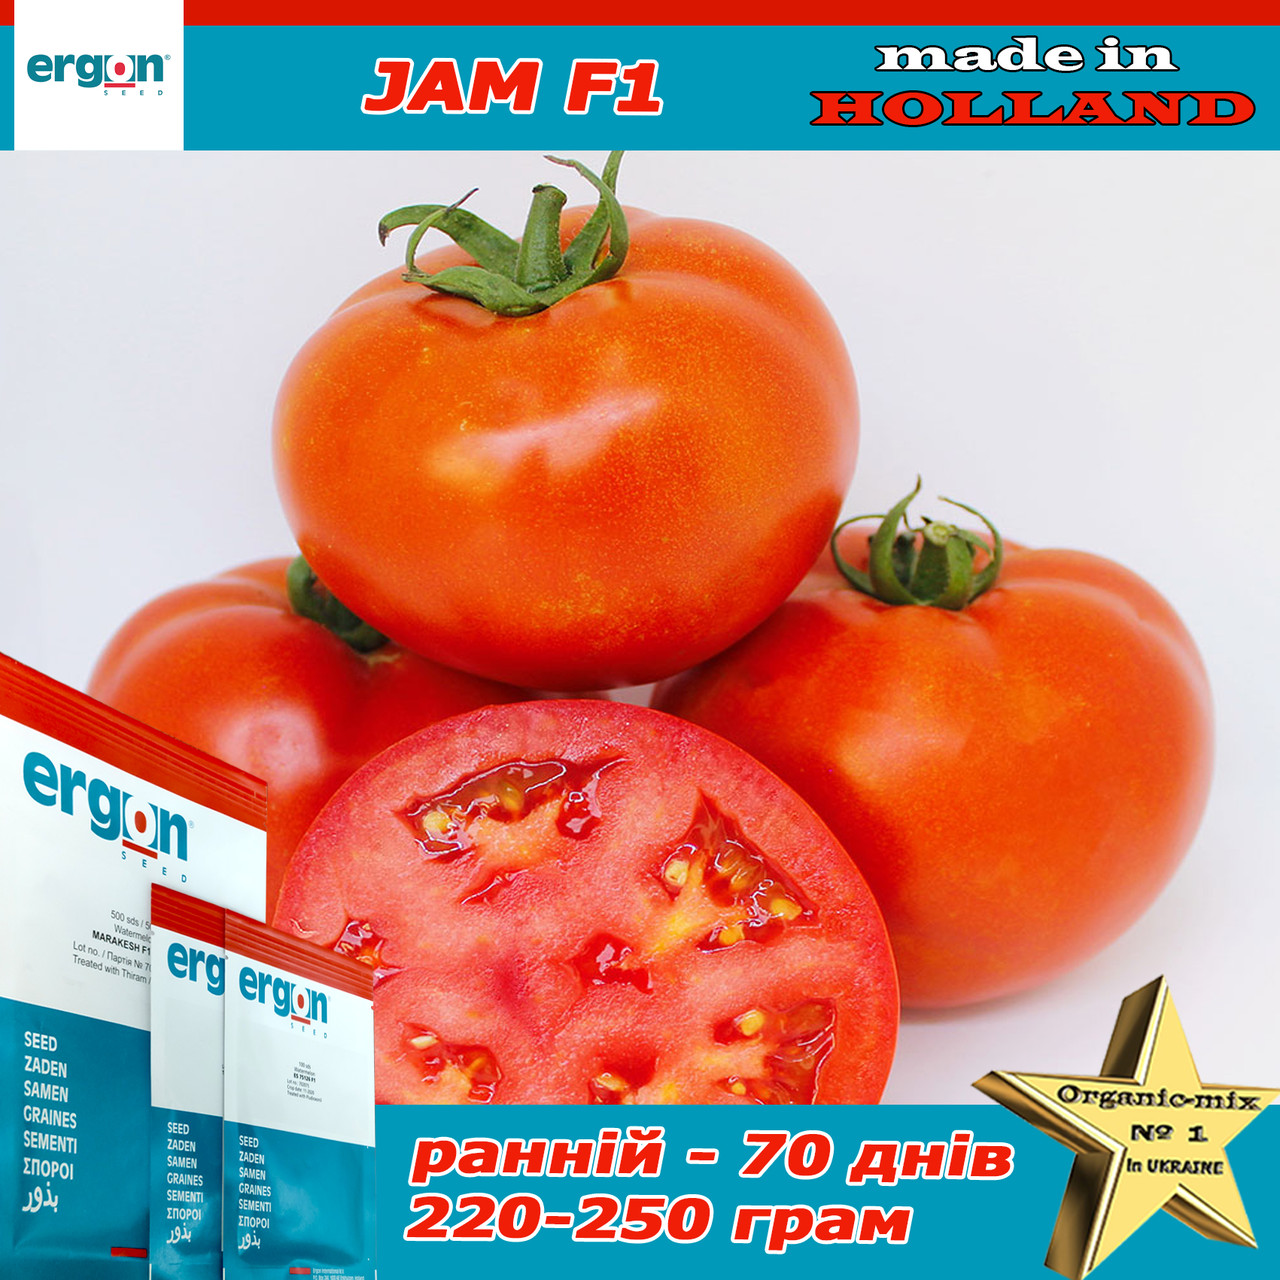 Насіння, томат ранній Джем F1 / Jam F1, ТМ ERGON SEED (Нідерланди), упаковка 250 насінин